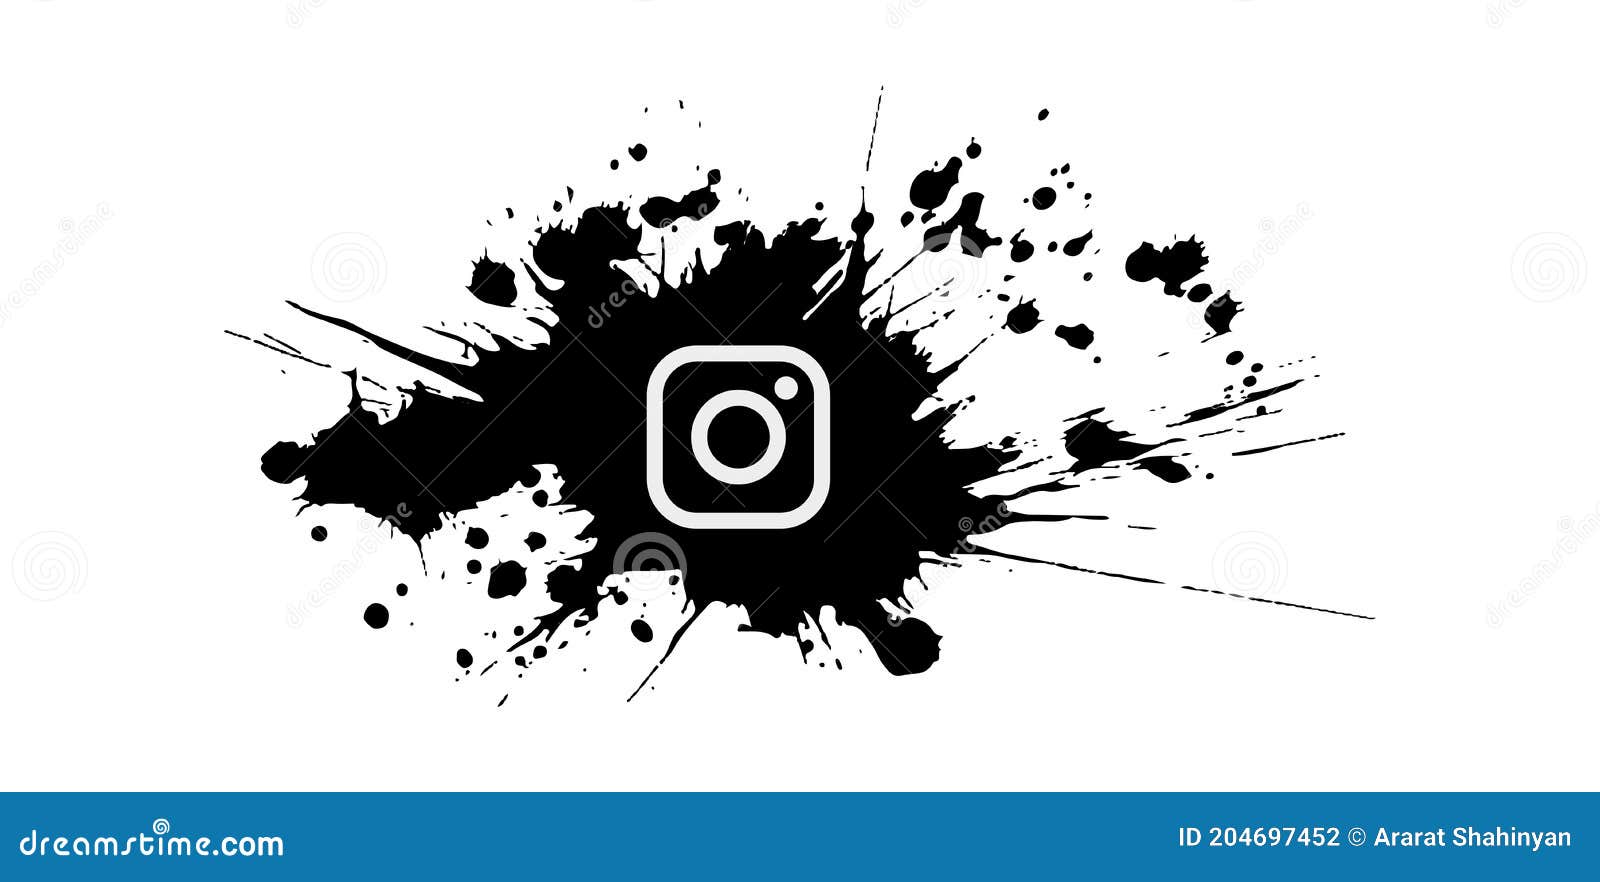 Splash Instagram Logo. Màu đen và trắng. Cách ly trên nền trắng - Cập nhật font chữ logo Instagram: Với Splash Instagram Logo được cách ly trên nền trắng, biểu tượng Instagram trở nên nổi bật hơn và dễ nhìn hơn trên các thiết bị di động. Hãy khám phá hình ảnh này và trải nghiệm sự cập nhật thú vị về font chữ mới của Instagram.